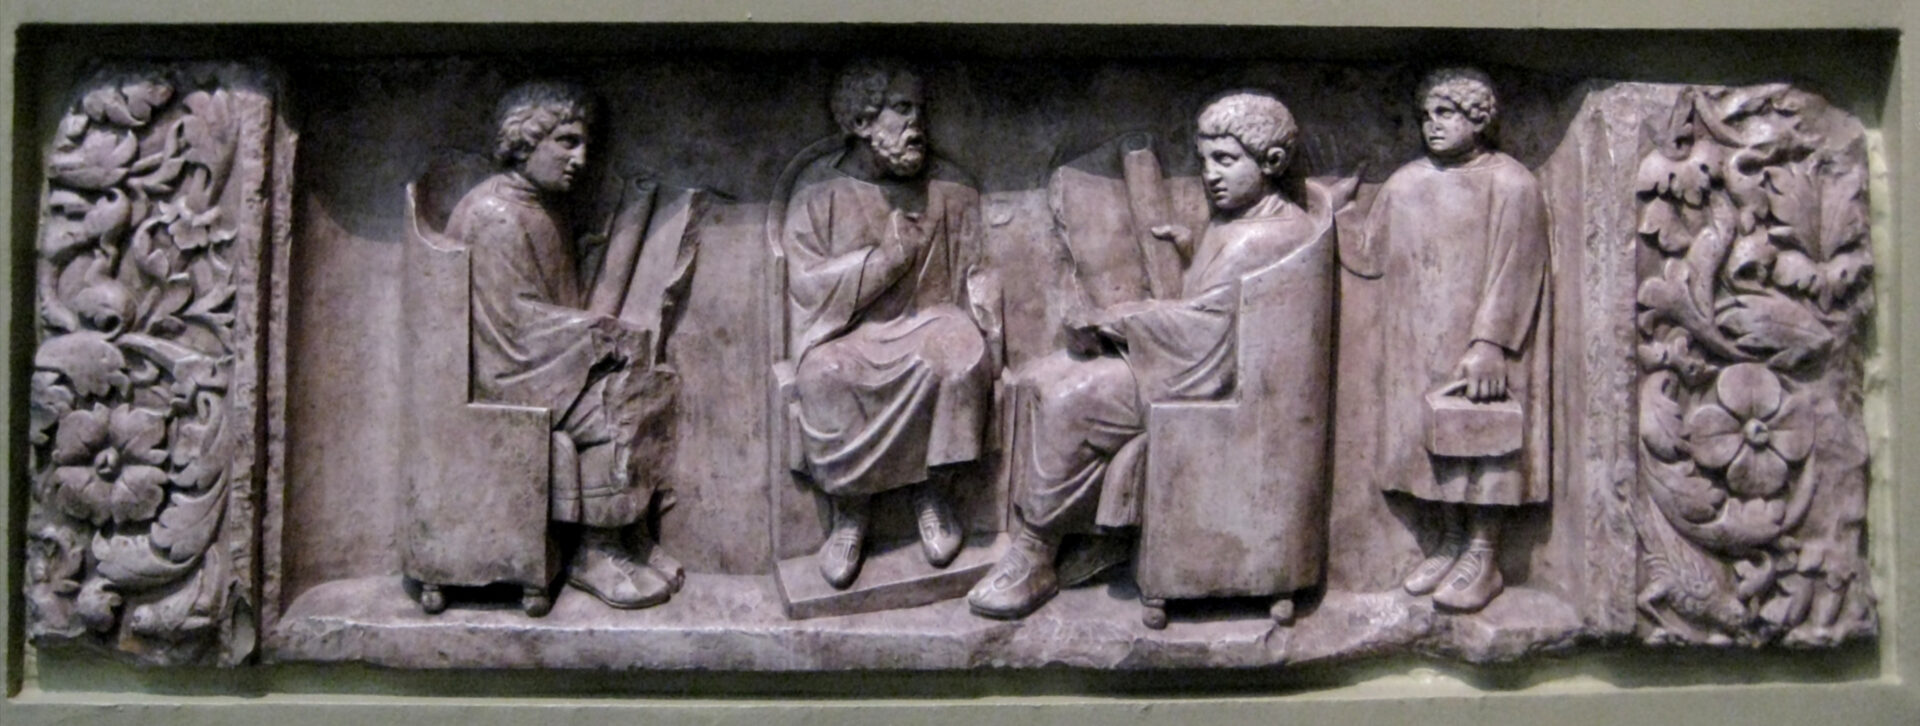 Abguss eines Reliefs mit Schulszene von einem römischen Grabdenkmal. Um 180 bis 185 nach Christus, Fundort Neumagen, heute: Rheinisches Landesmuseum Trier